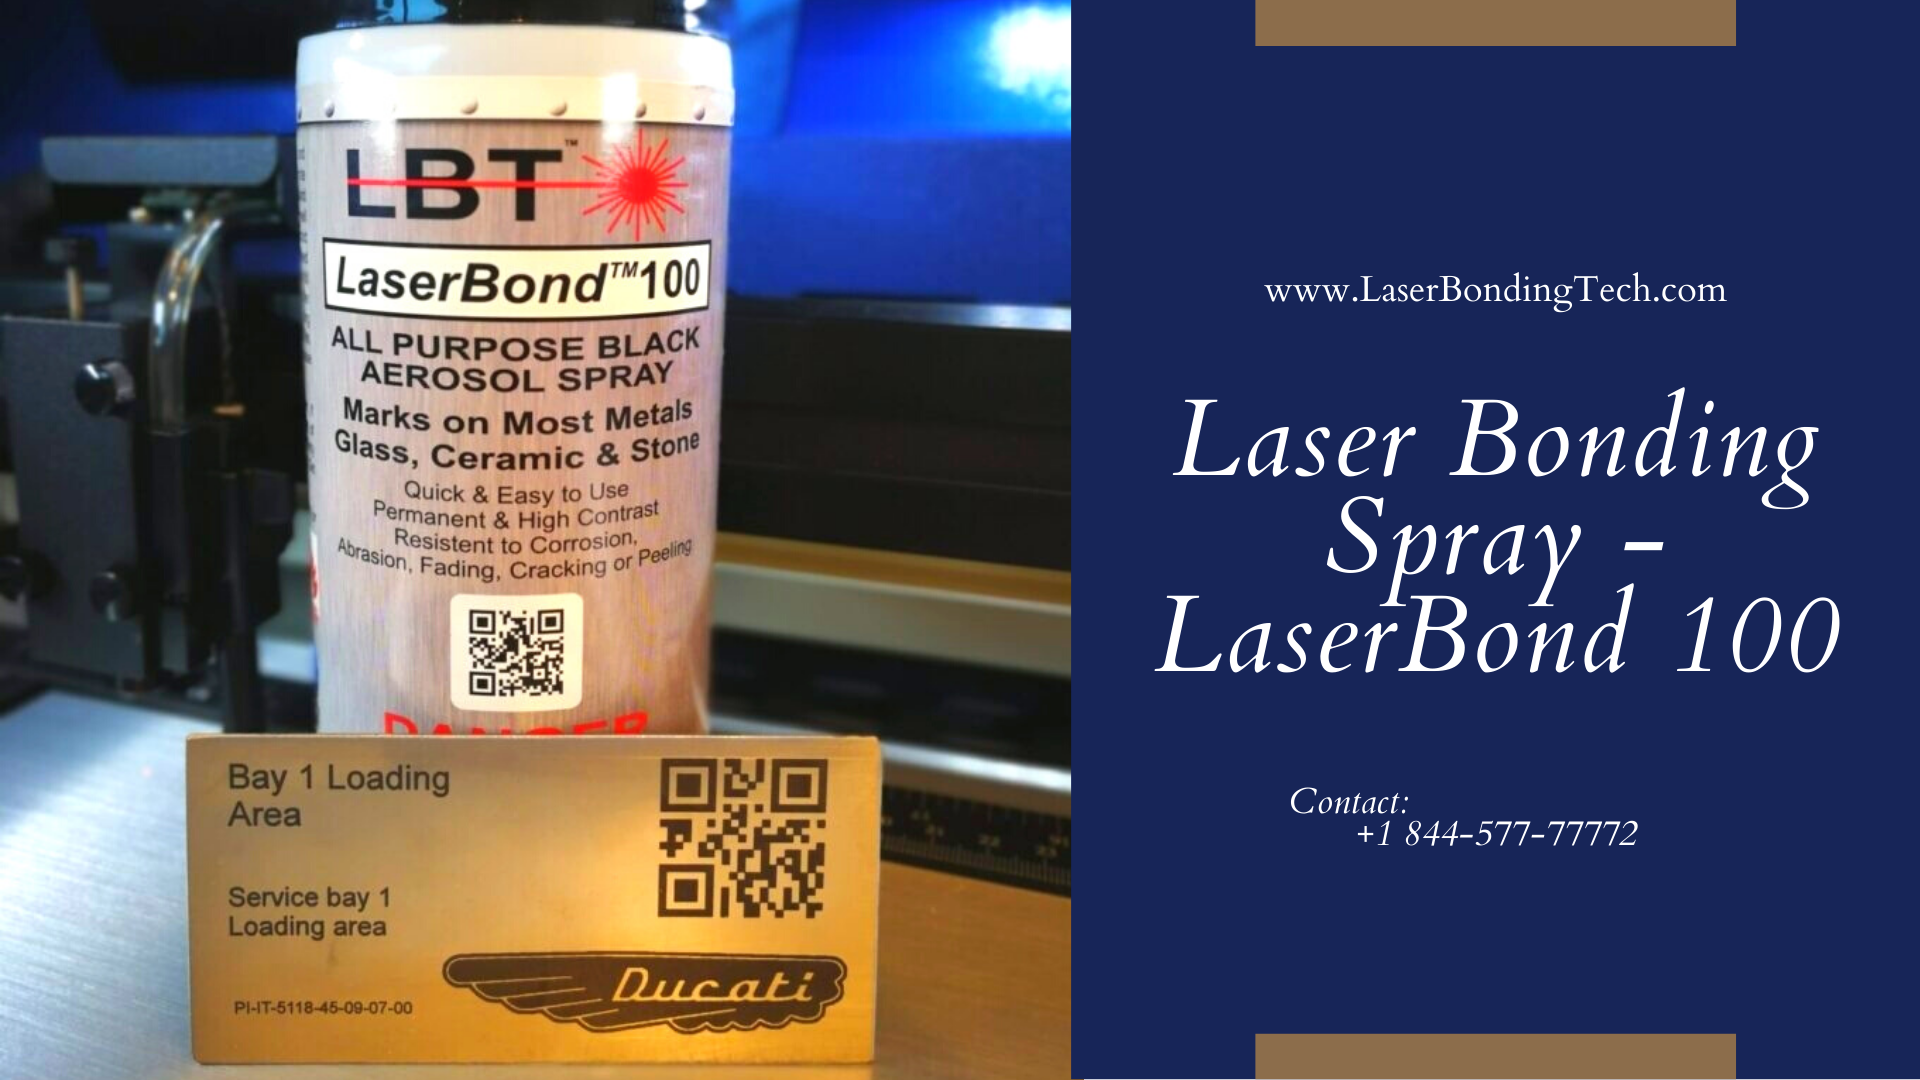 Laser Bonding Spray - LaserBond 100